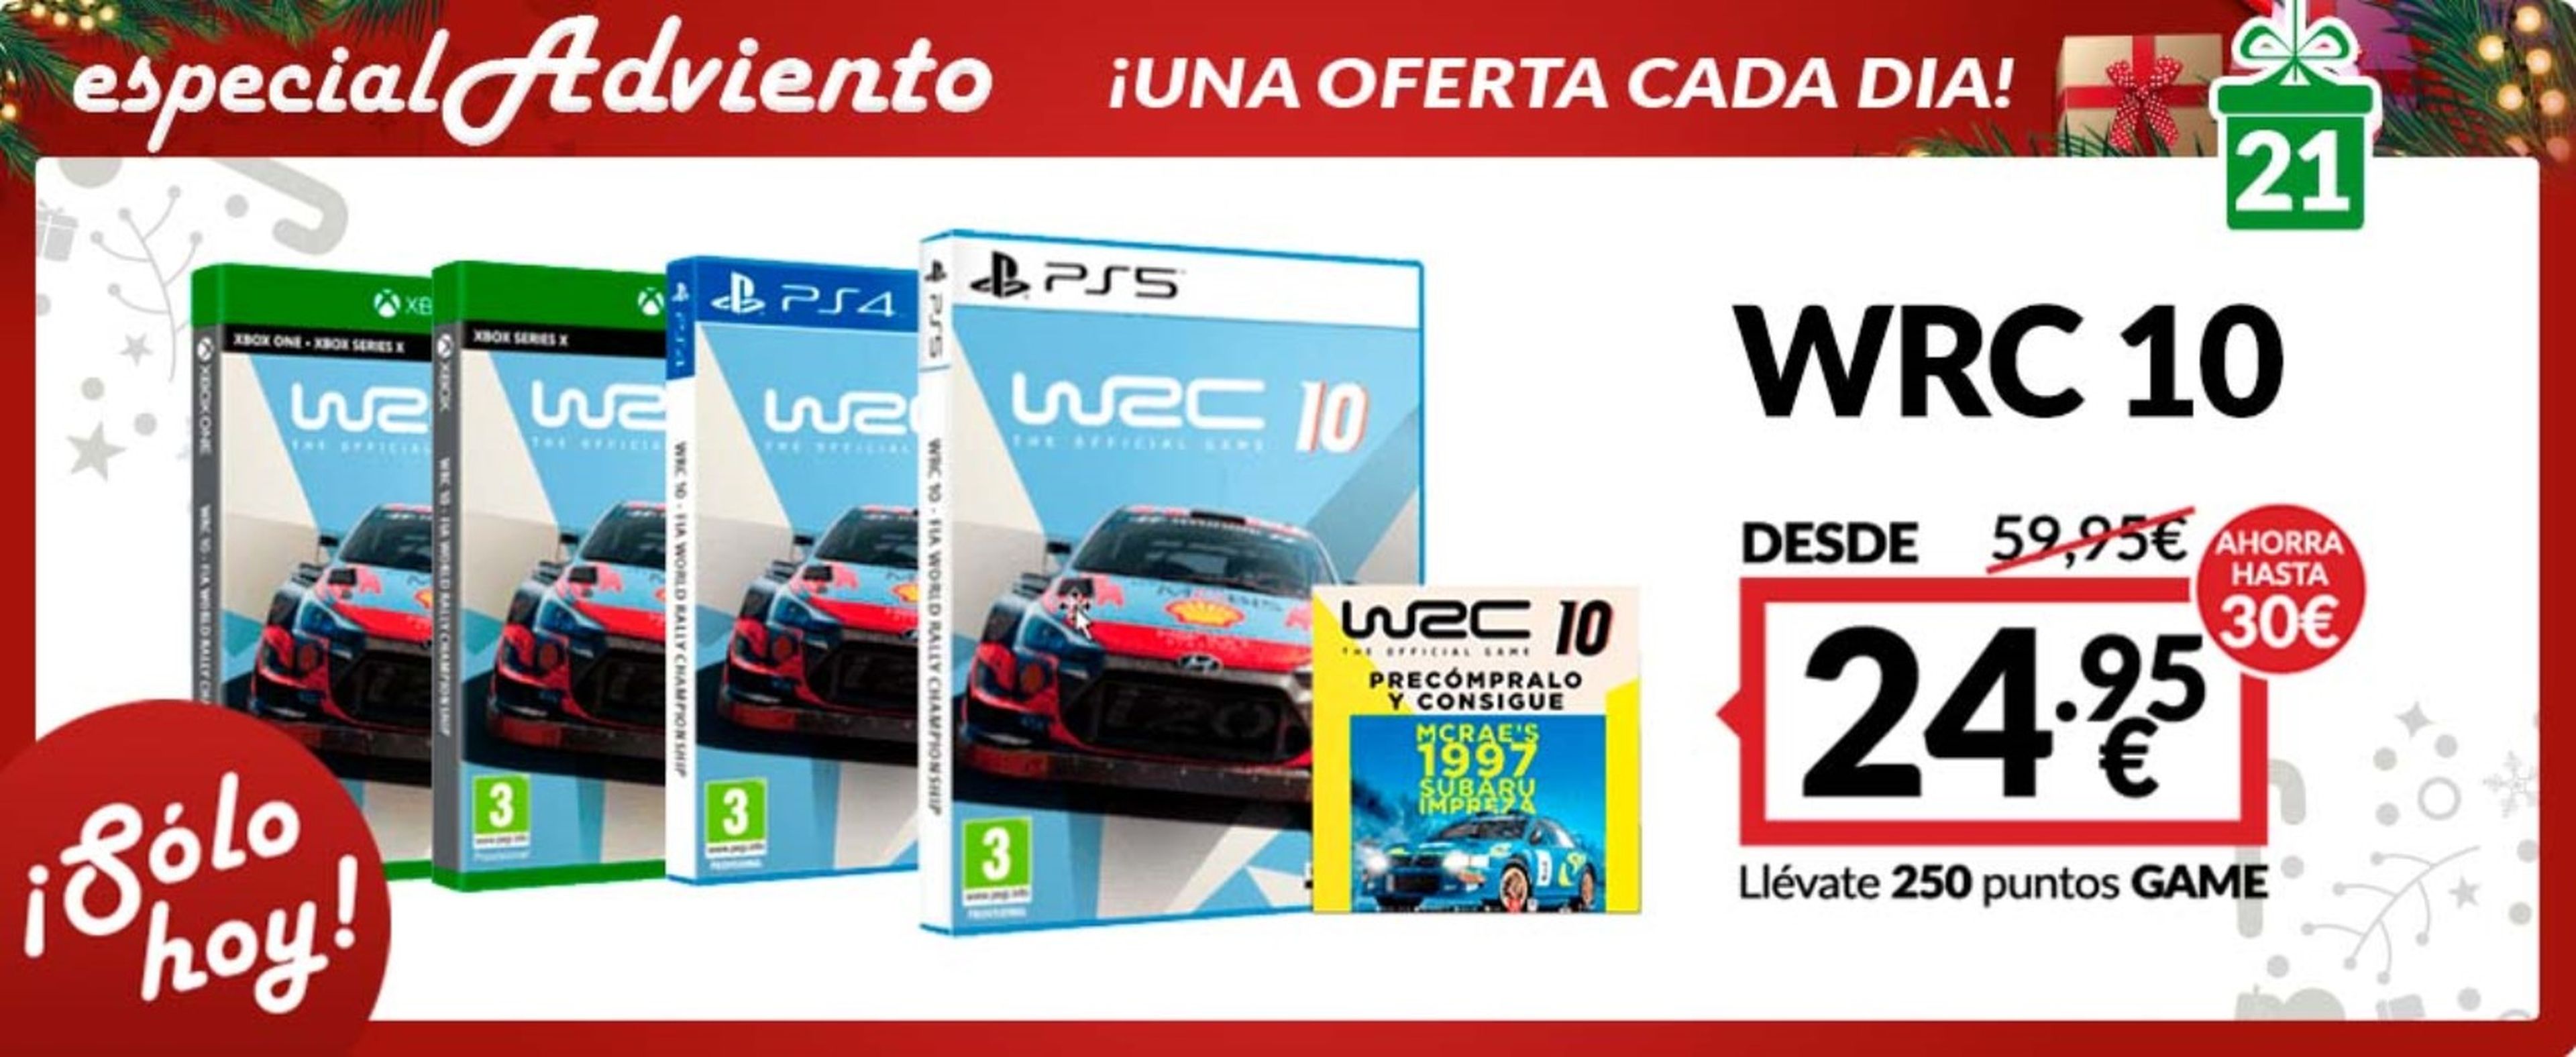 WRC 10 en oferta en tiendas GAME